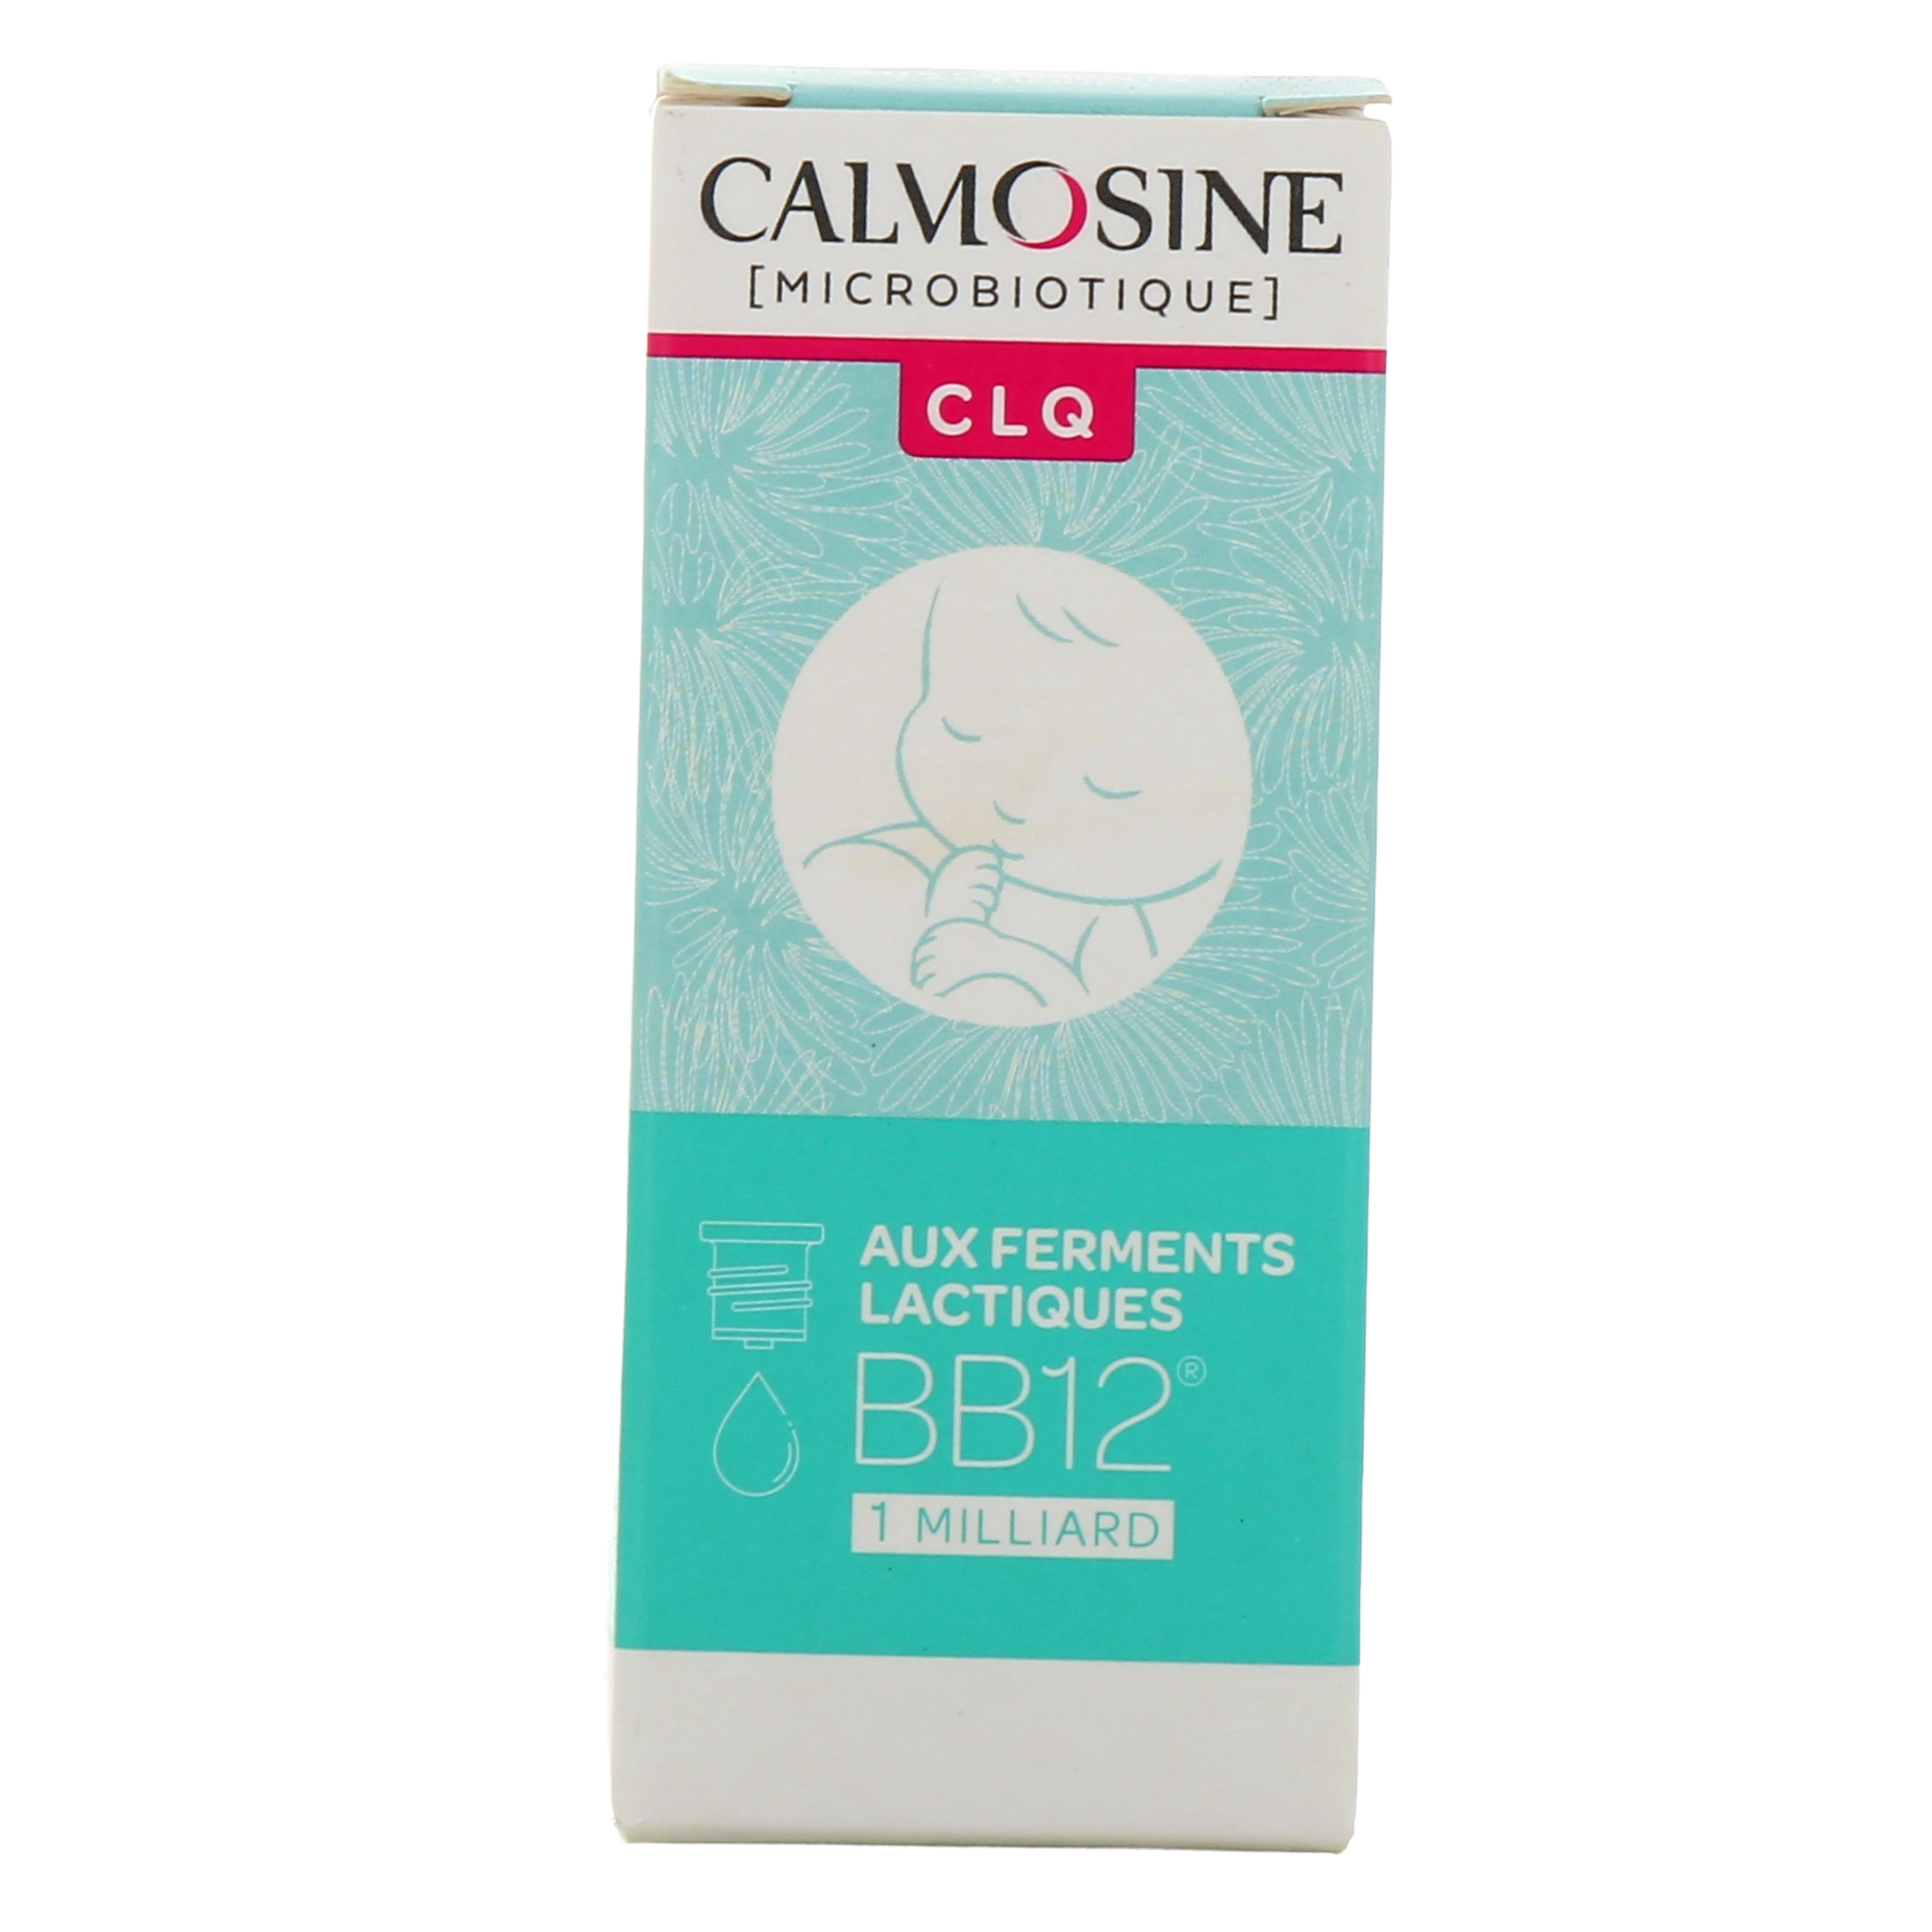 Calmosine Microbiotique IMM 9 ml